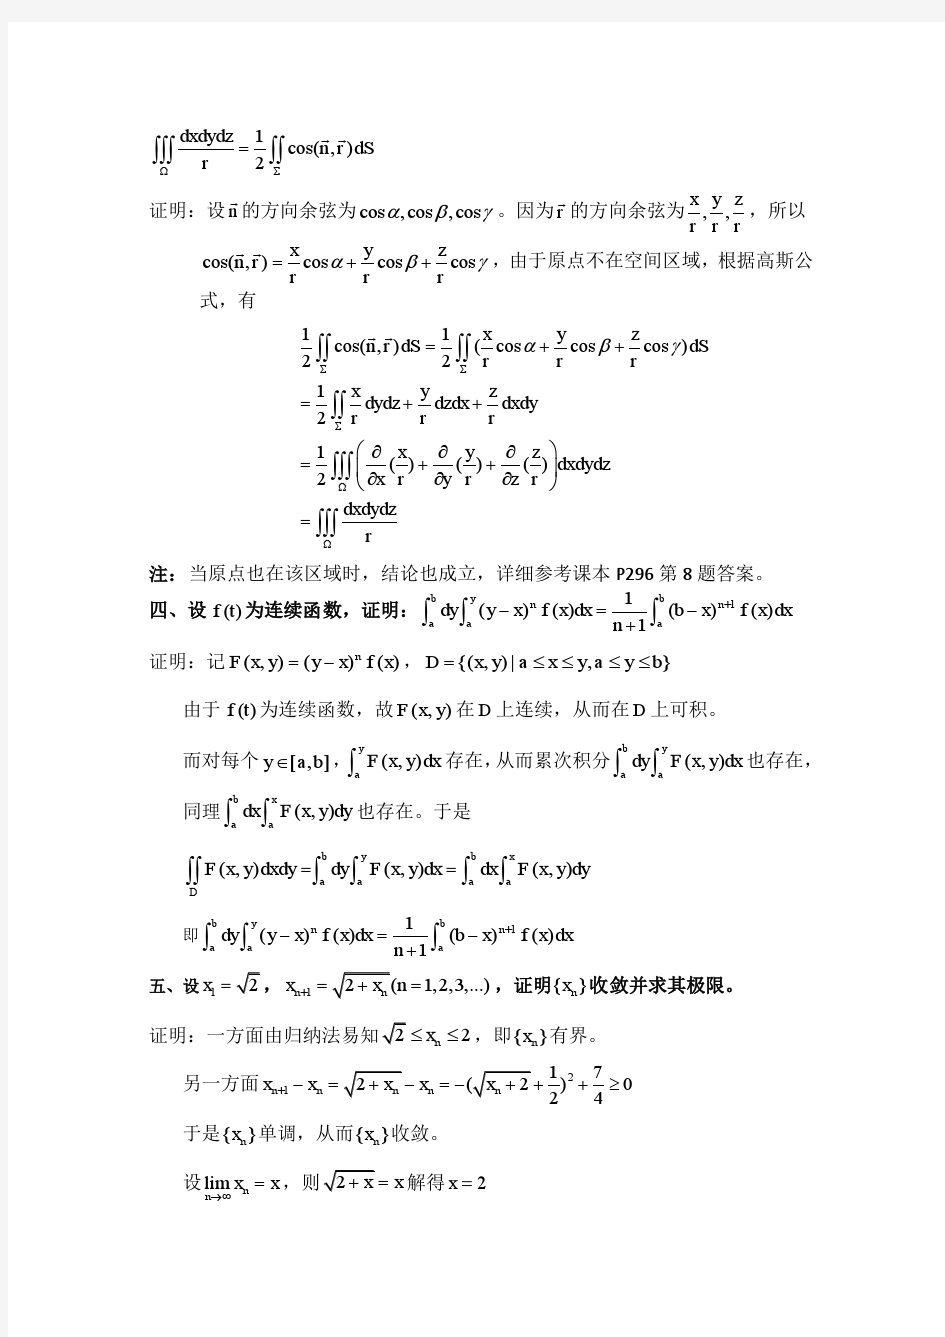 2008年华中科技大学考研数学分析真题答案